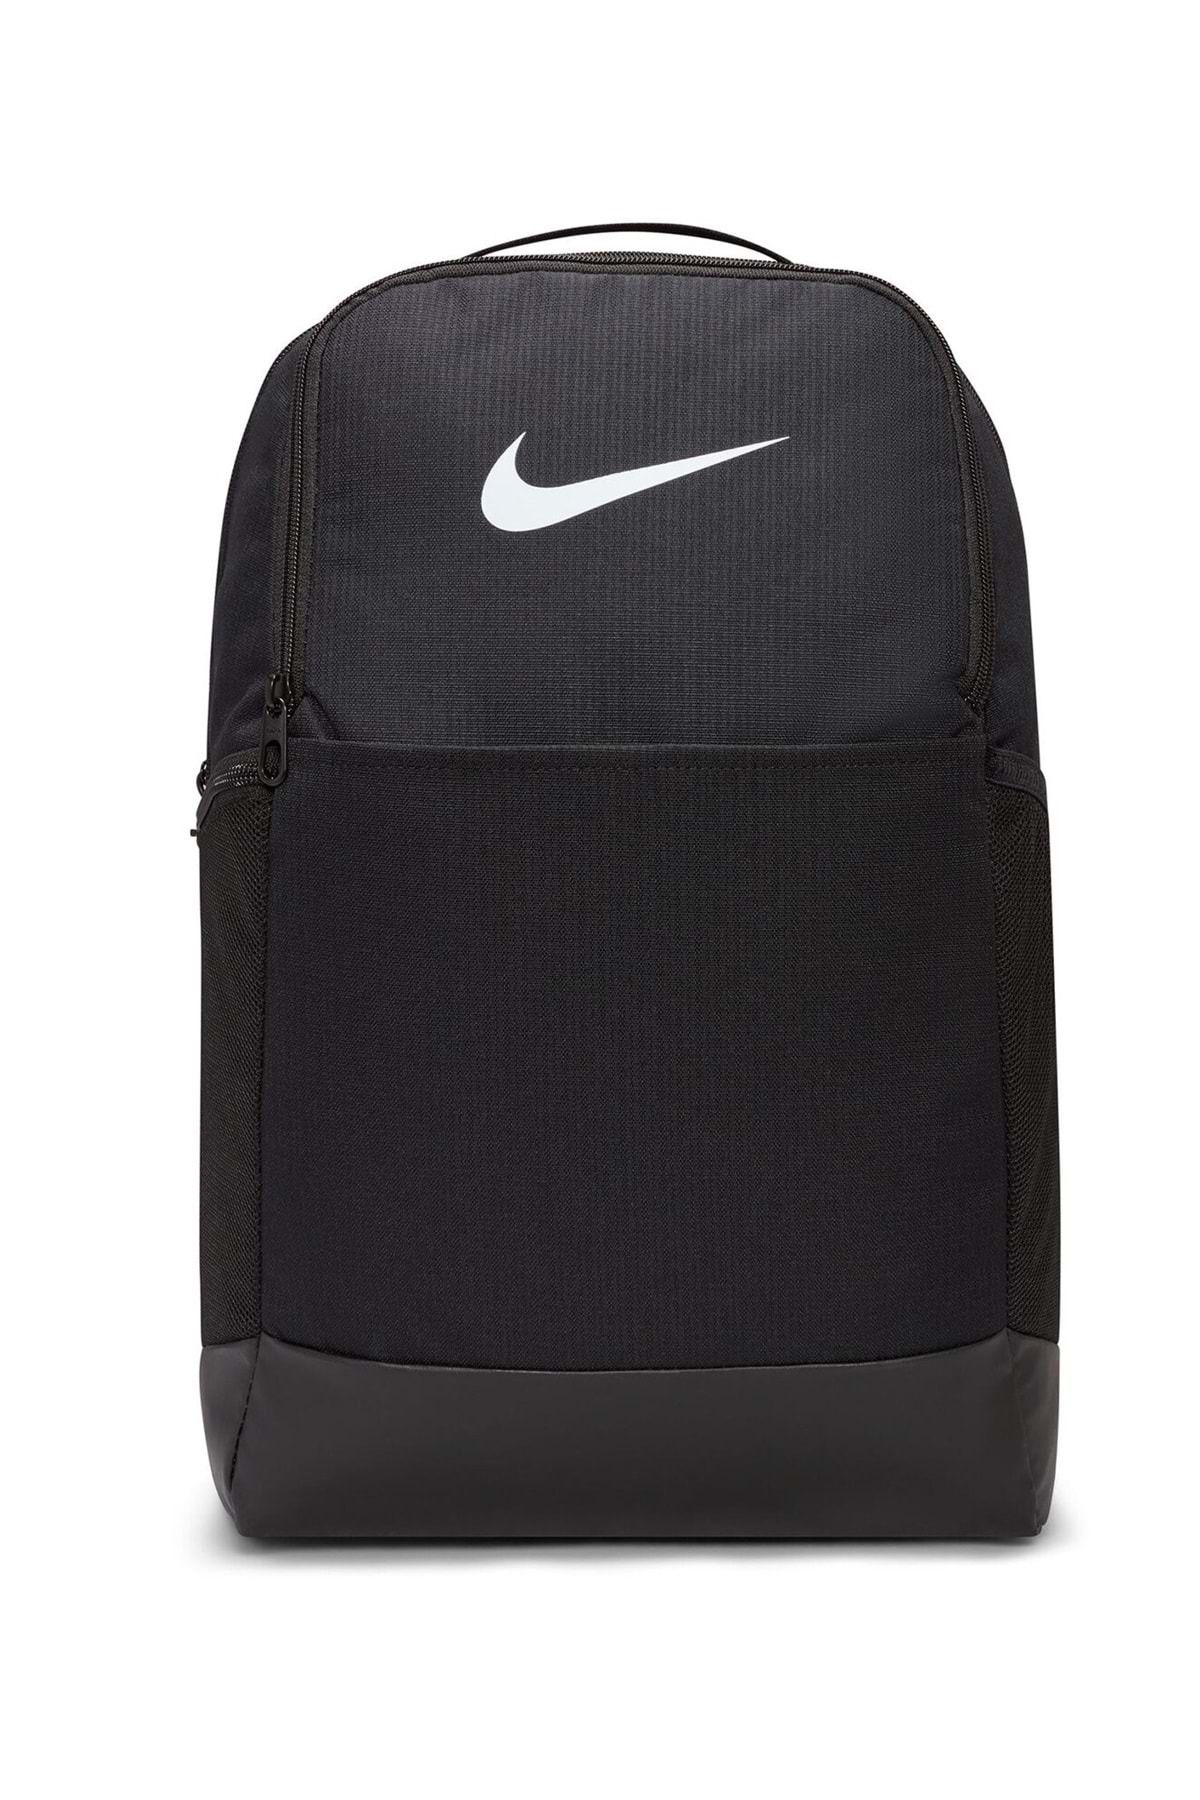 Nike Brasilia 9.5 24l Dh7709- Backpack Sırt Çantası Unisex Sırt Çantası Siyah